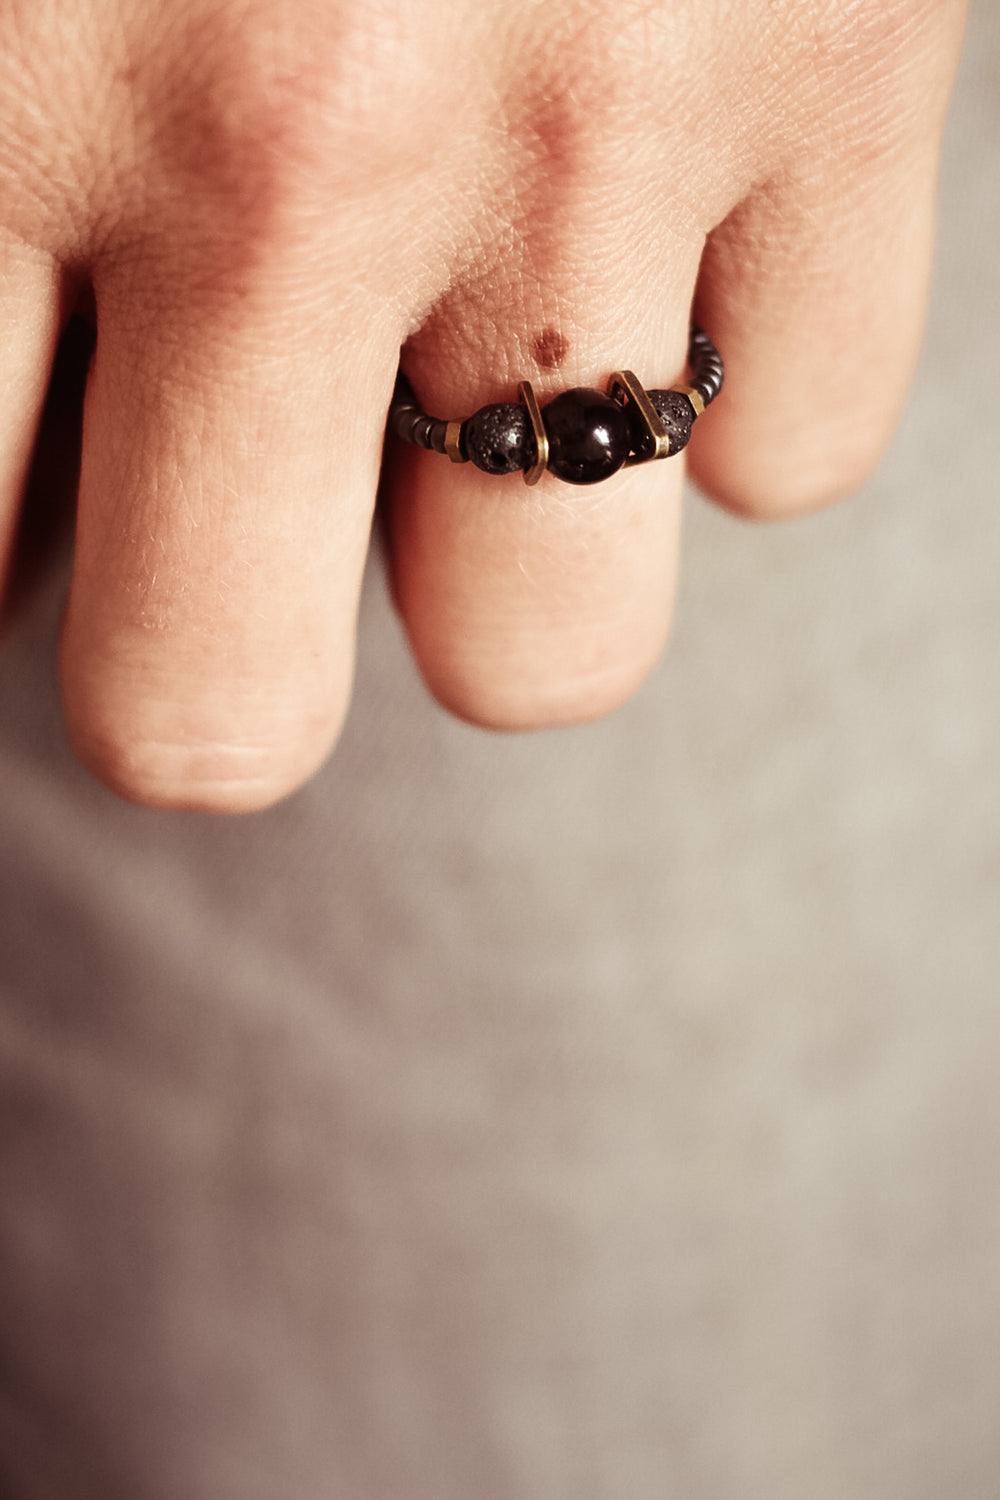 #06. Fingerring in schwarz, Edelsteine